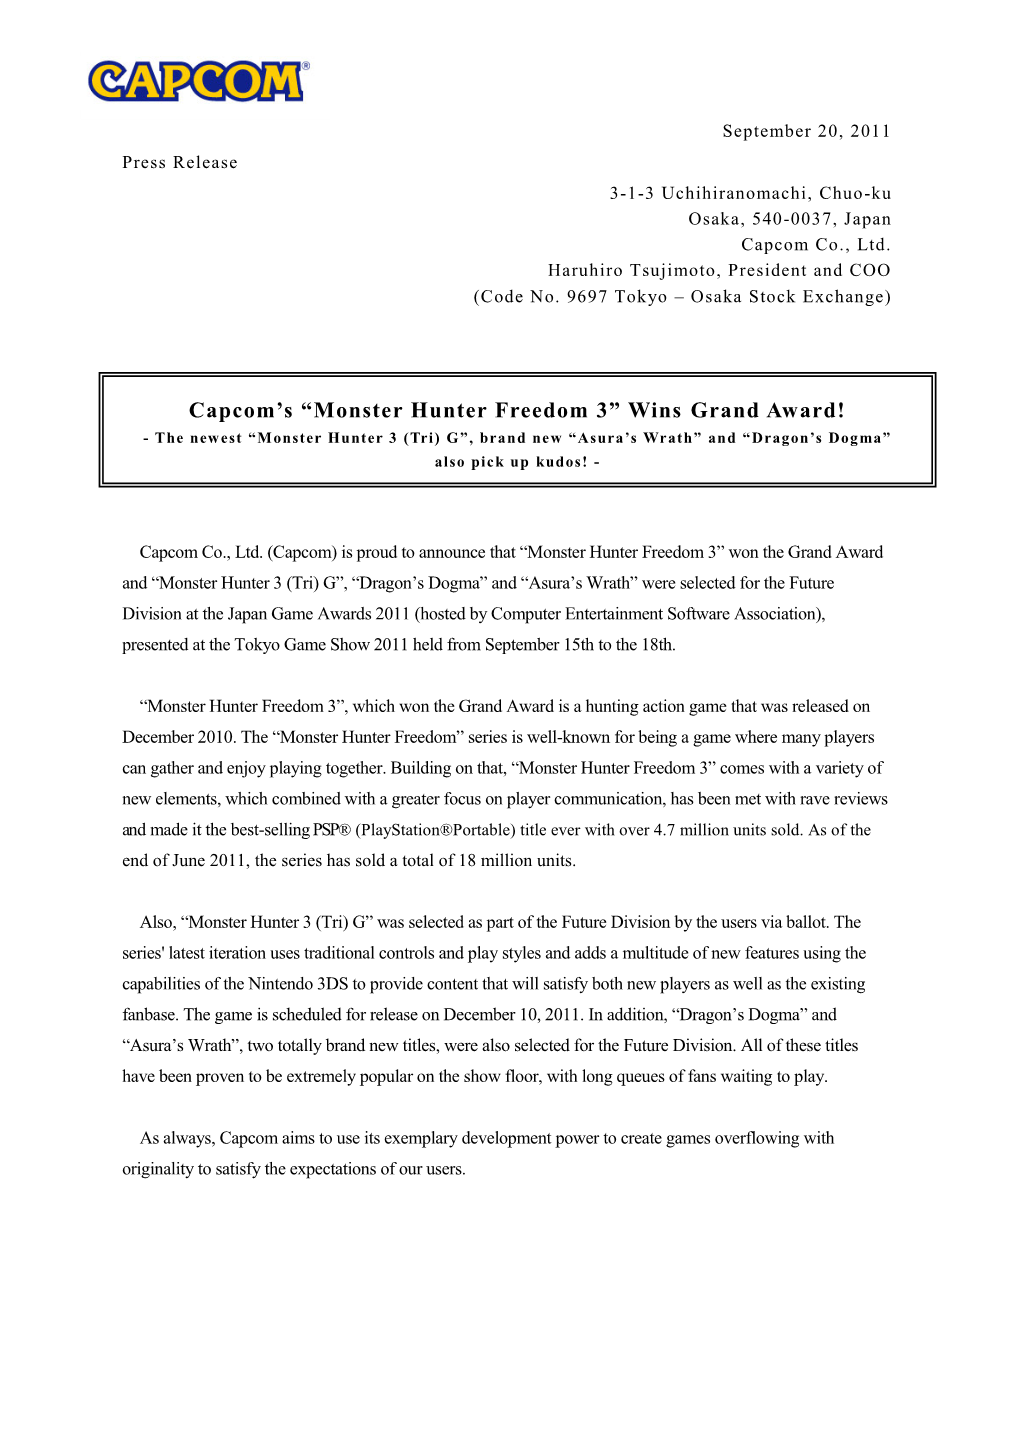 Monster Hunter Freedom 3” Wins Grand Award!